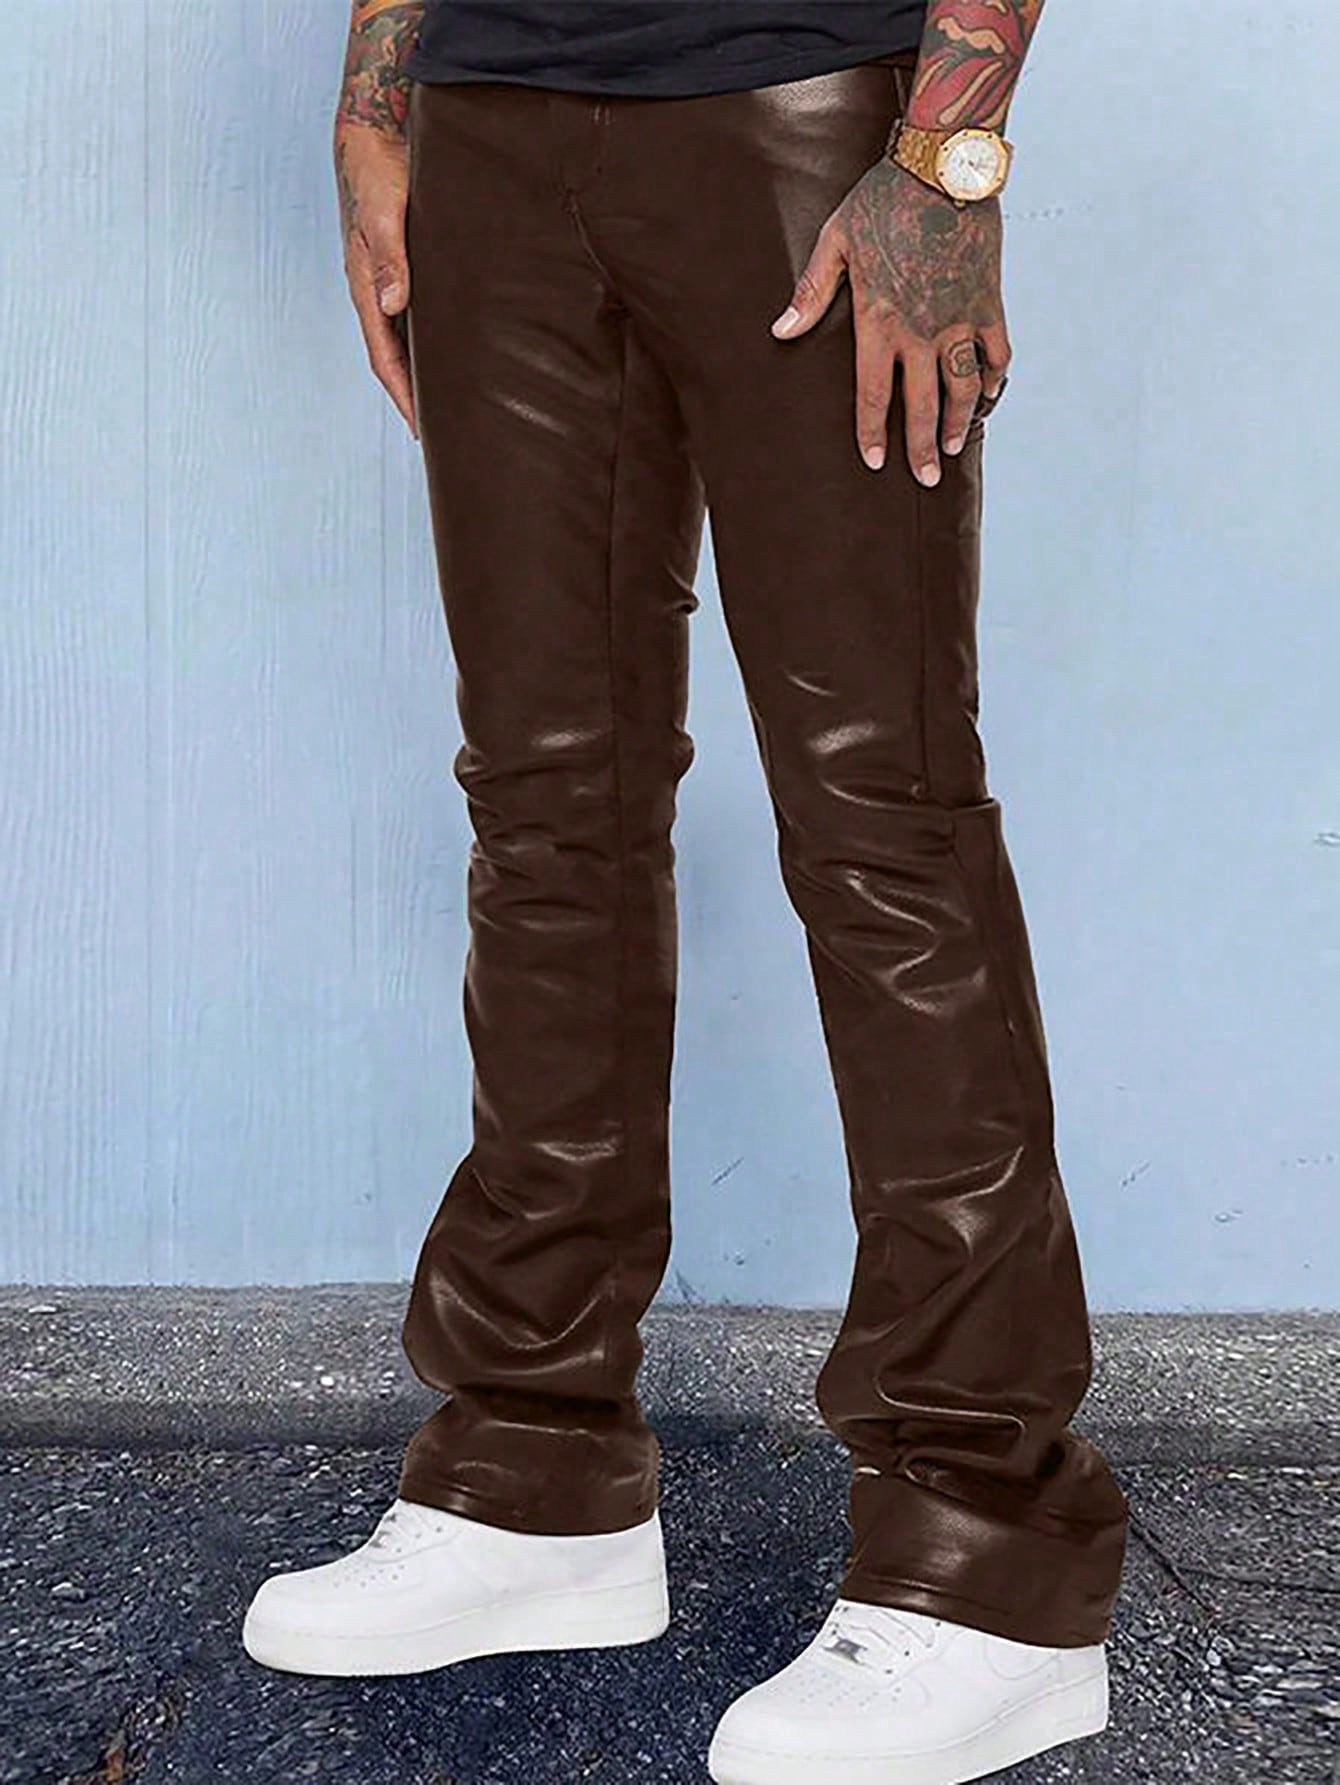 Мужские брюки с карманами и клапанами Manfinity EMRG, кофейный коричневый